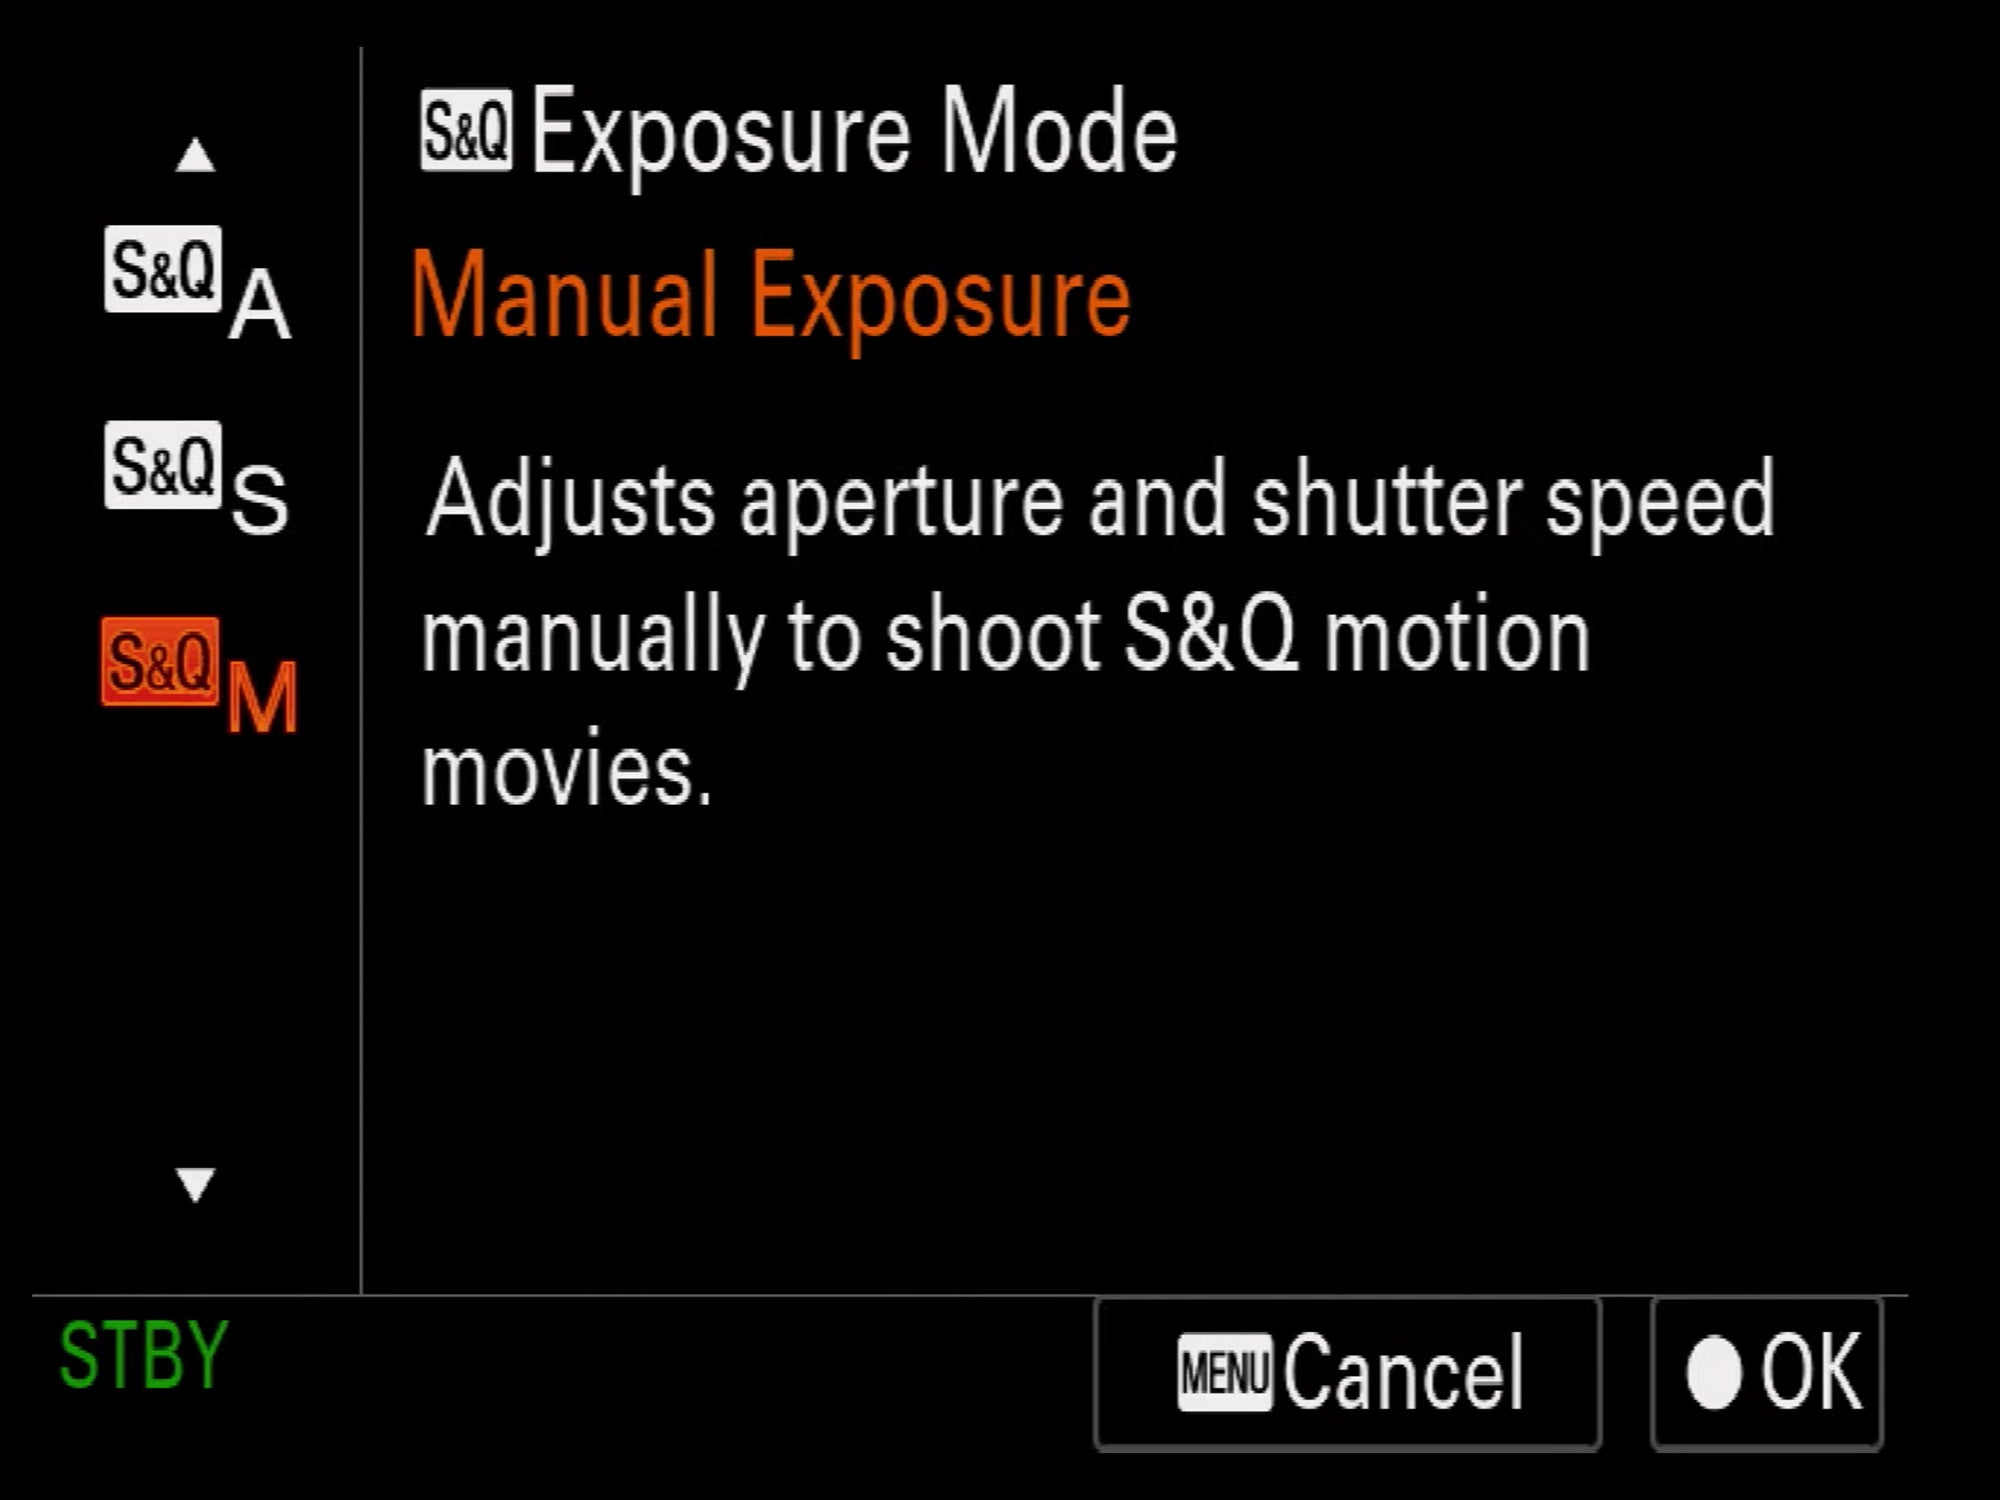 Slow & Quick Mode Camera Setup